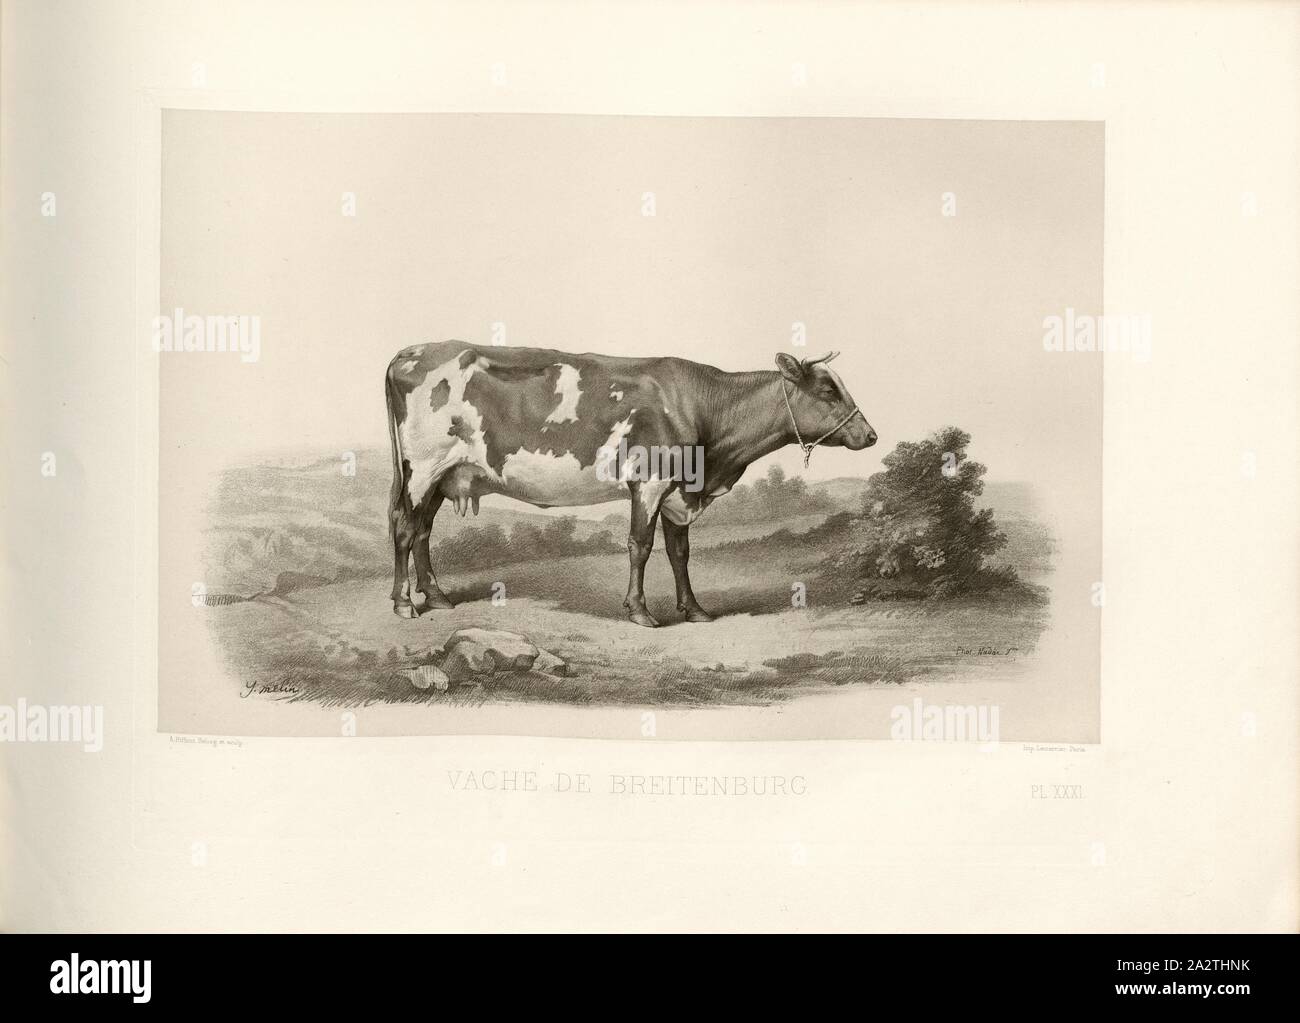 Breitenburg cow, Breitenburg cattle, cow, signed: I. Melin; Phot., Nadar jeune; A. Riffaut Heliog., et sculp, Pl. XXXI, p. 75, Melin, I.; Tournachon, Adrien Alban (Phot.); Riffaut, A. (heliog. et sc.), Emile Baudement: Les races bovines au concours universel agricole de Paris en 1856: études zootechniques. Bd. 2. Paris: Imprimerie Impériale, MDCCCLXI [1861 Stock Photo